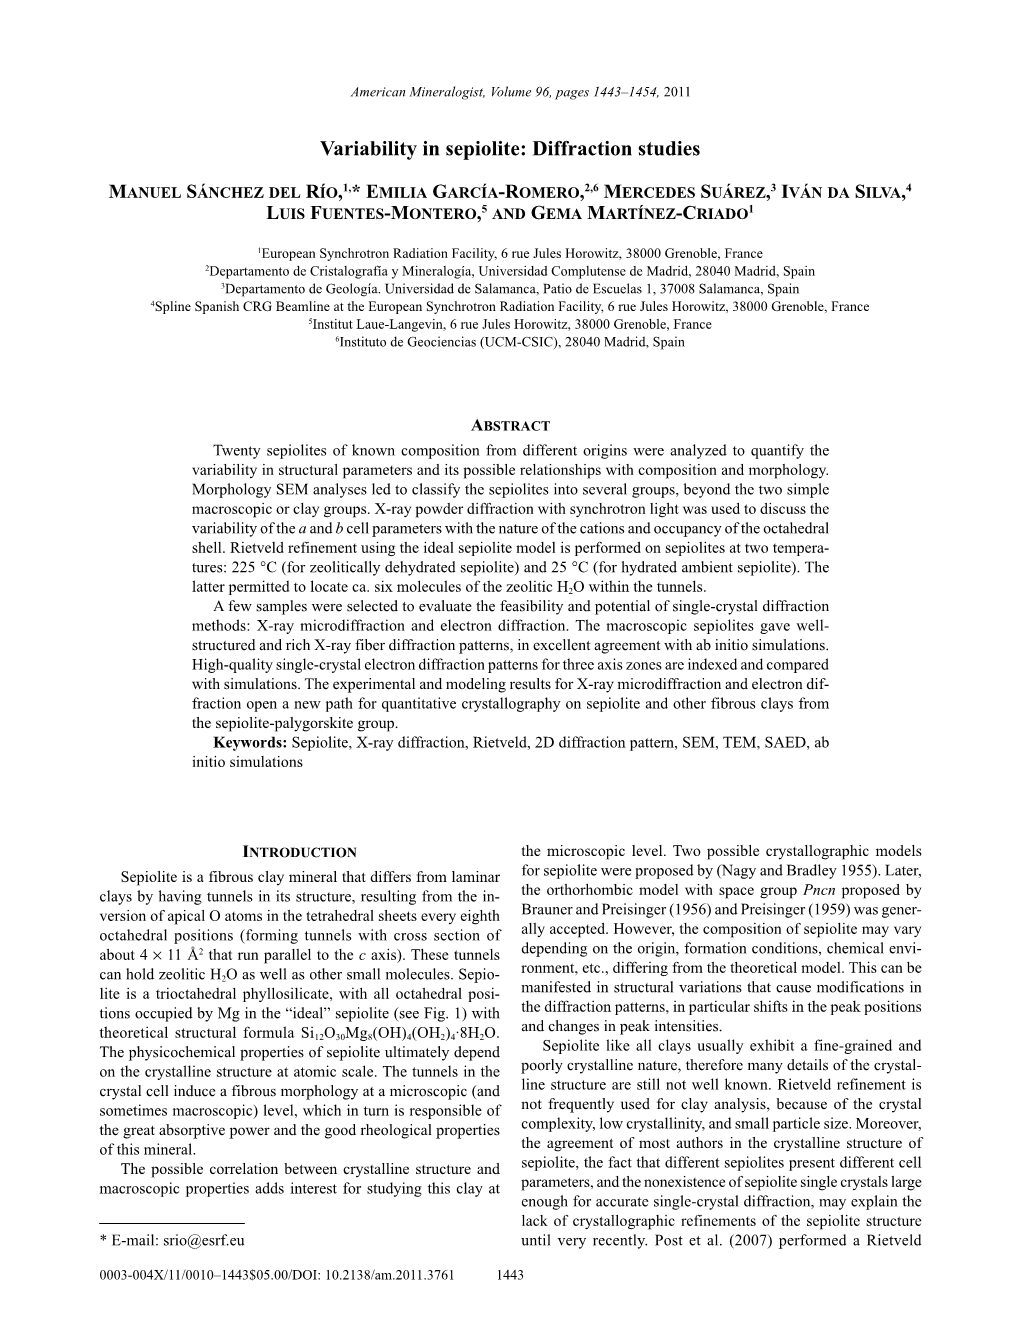 Variability in Sepiolite: Diffraction Studies